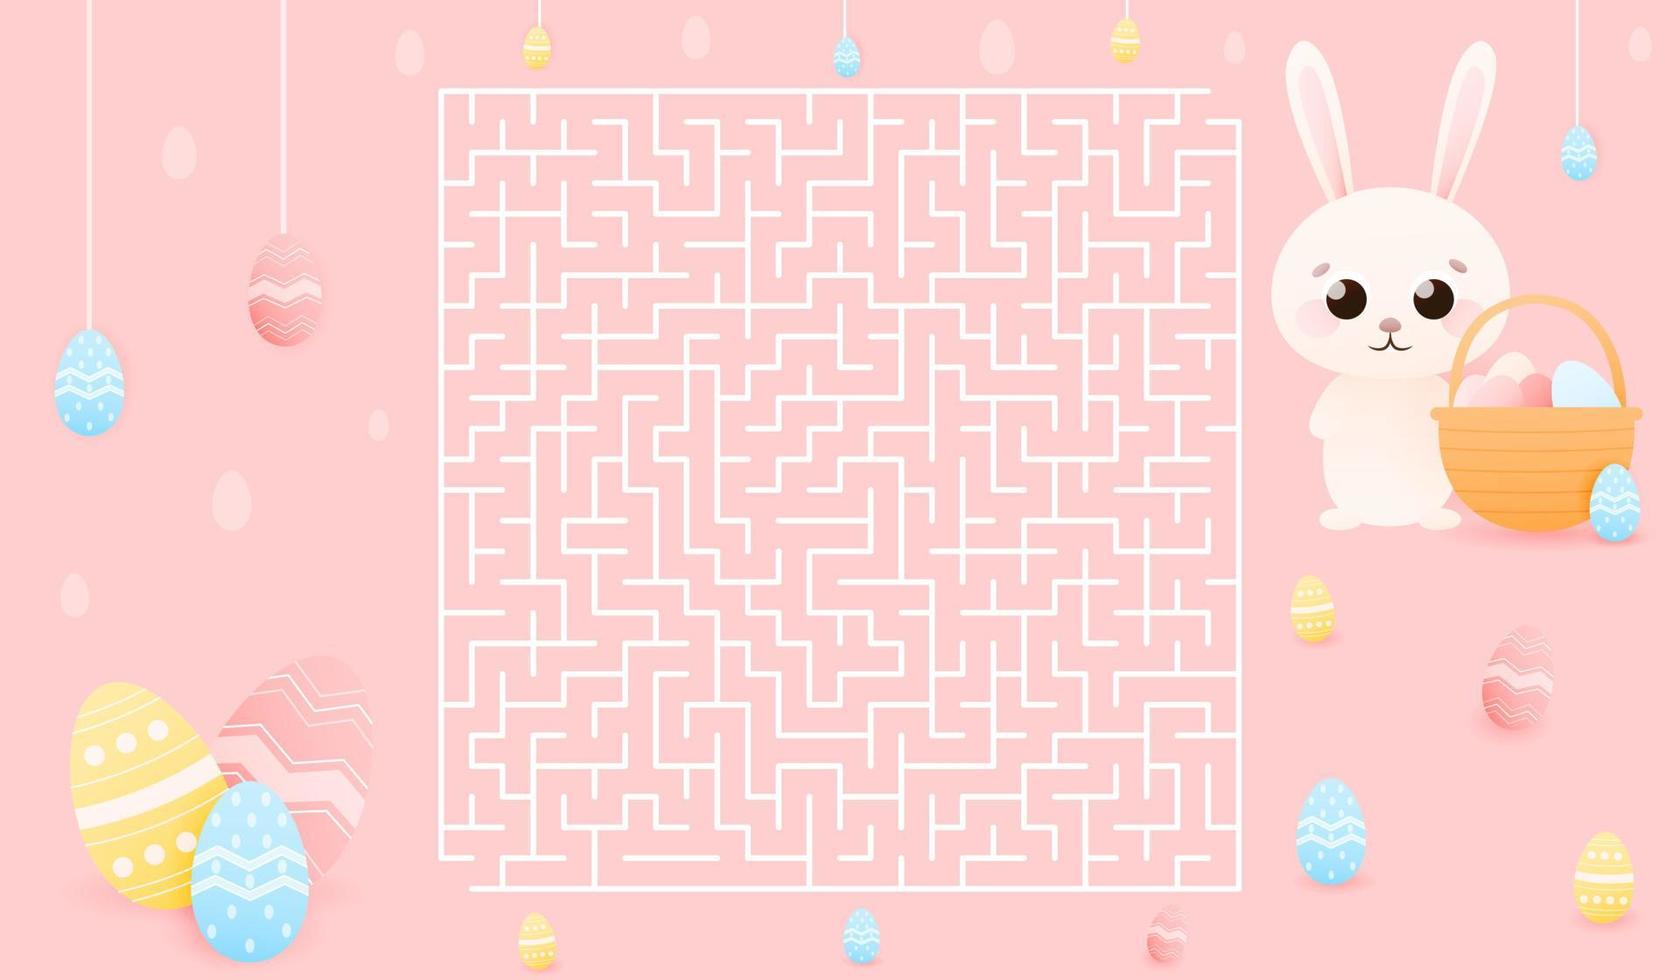 lätt labyrint för ungar, hjälp påsk kanin hitta sätt till målad ägg, pedagogisk gåta för barns böcker eller kalkylblad i skola, söt djur- karaktär på rosa bakgrund, vår högtider tema vektor